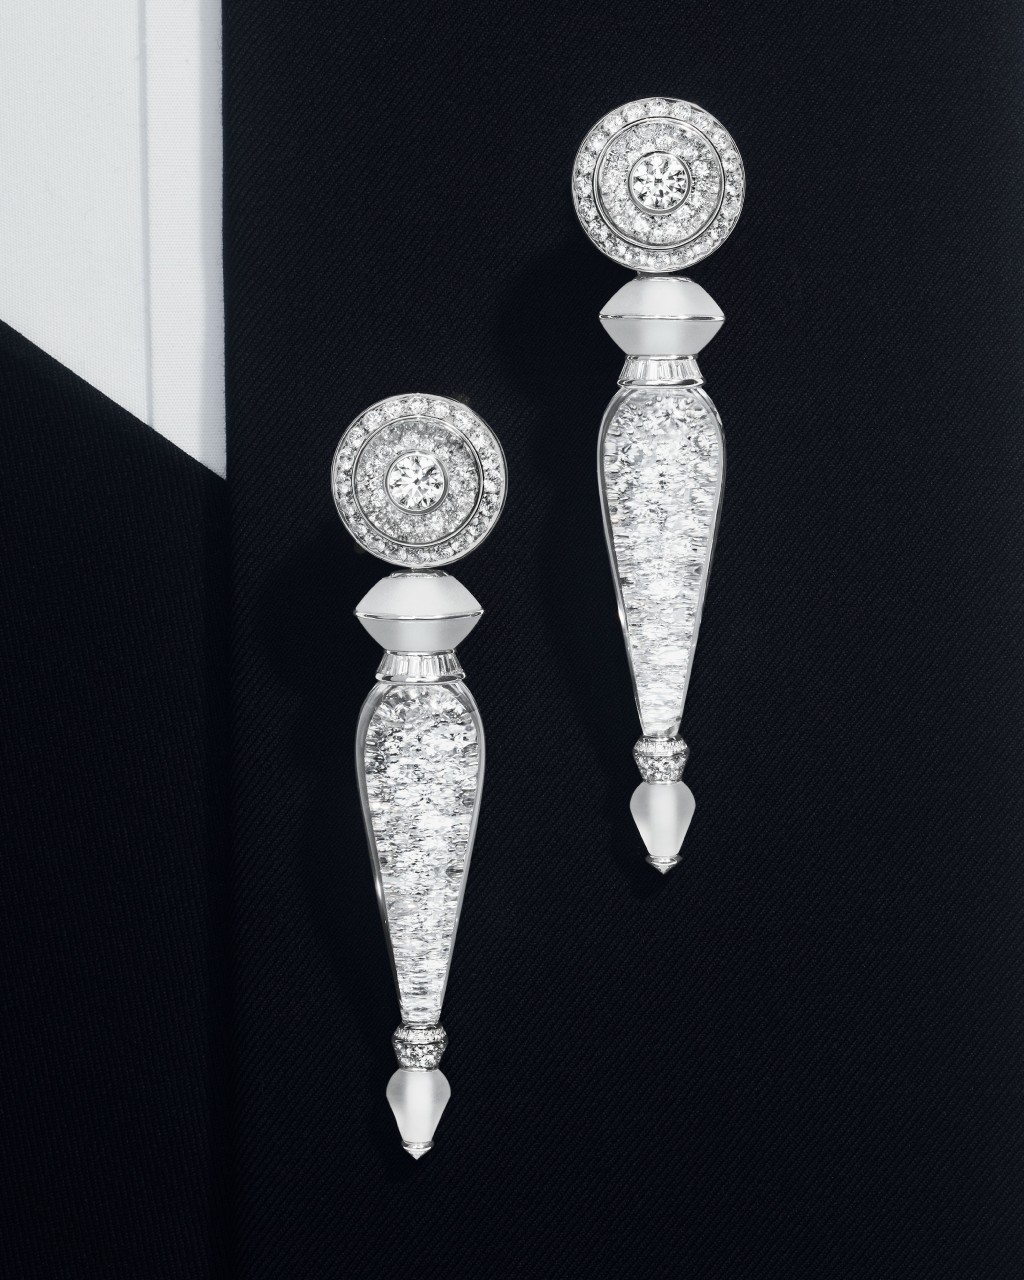 Aiguillette织绳穗饰套装包括的一对镶嵌密镶钻石与水晶的同款长耳环，可以随意调校长度。